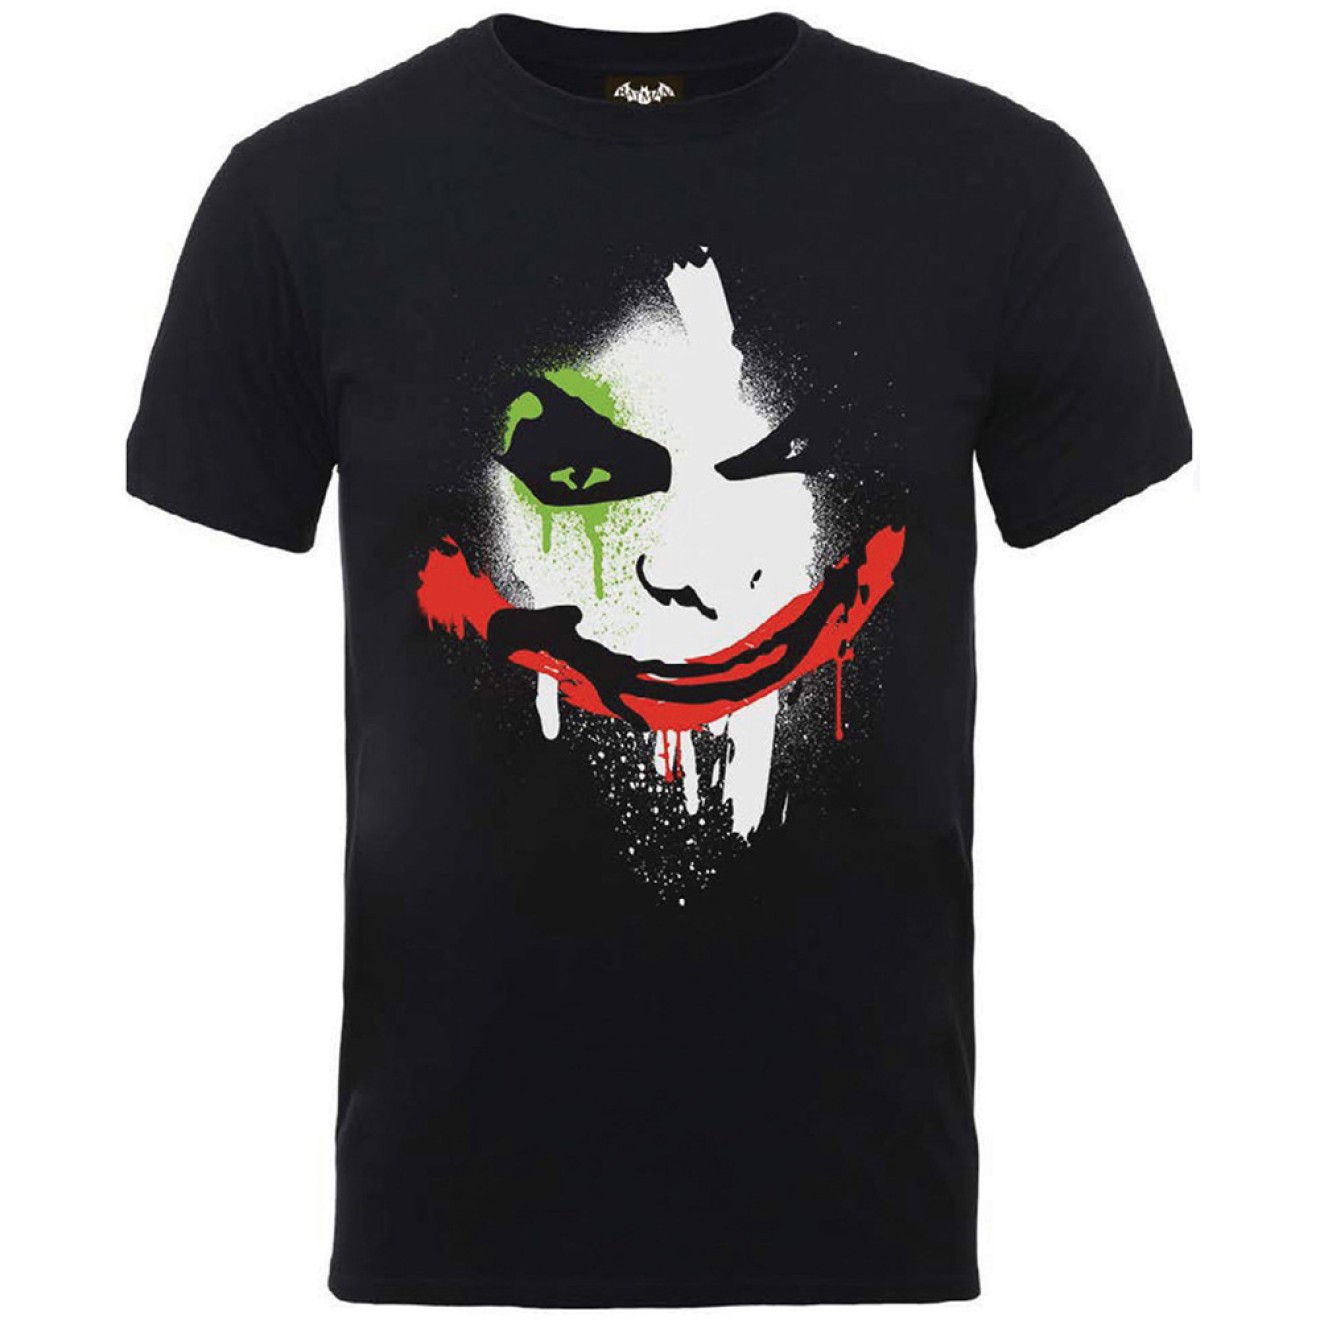 Batman Joker Face T-Shirt